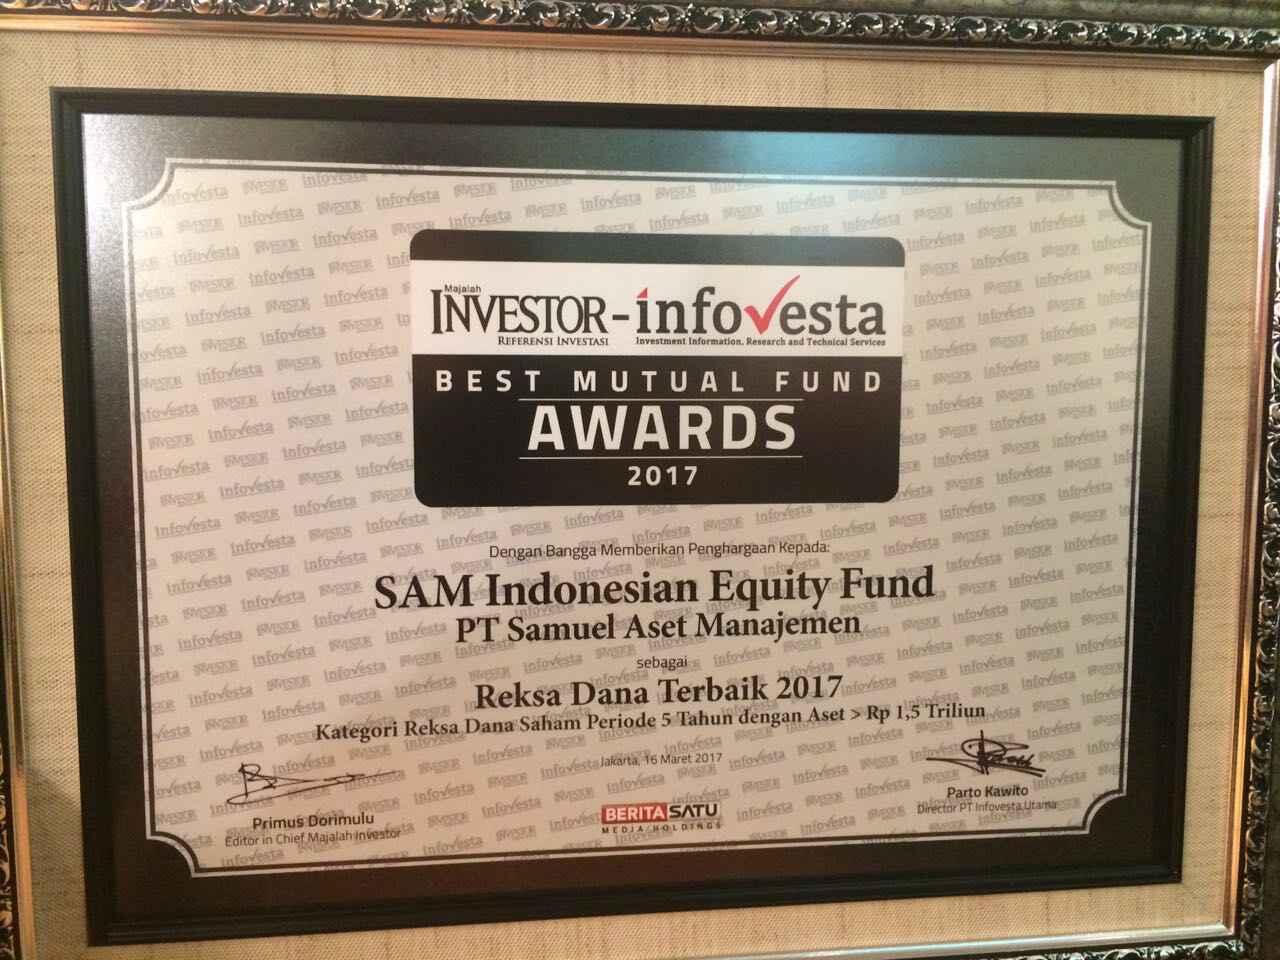 Reksadana SAM (Fixed income, Pasar Uang, Equity, Campuran & Syariah)